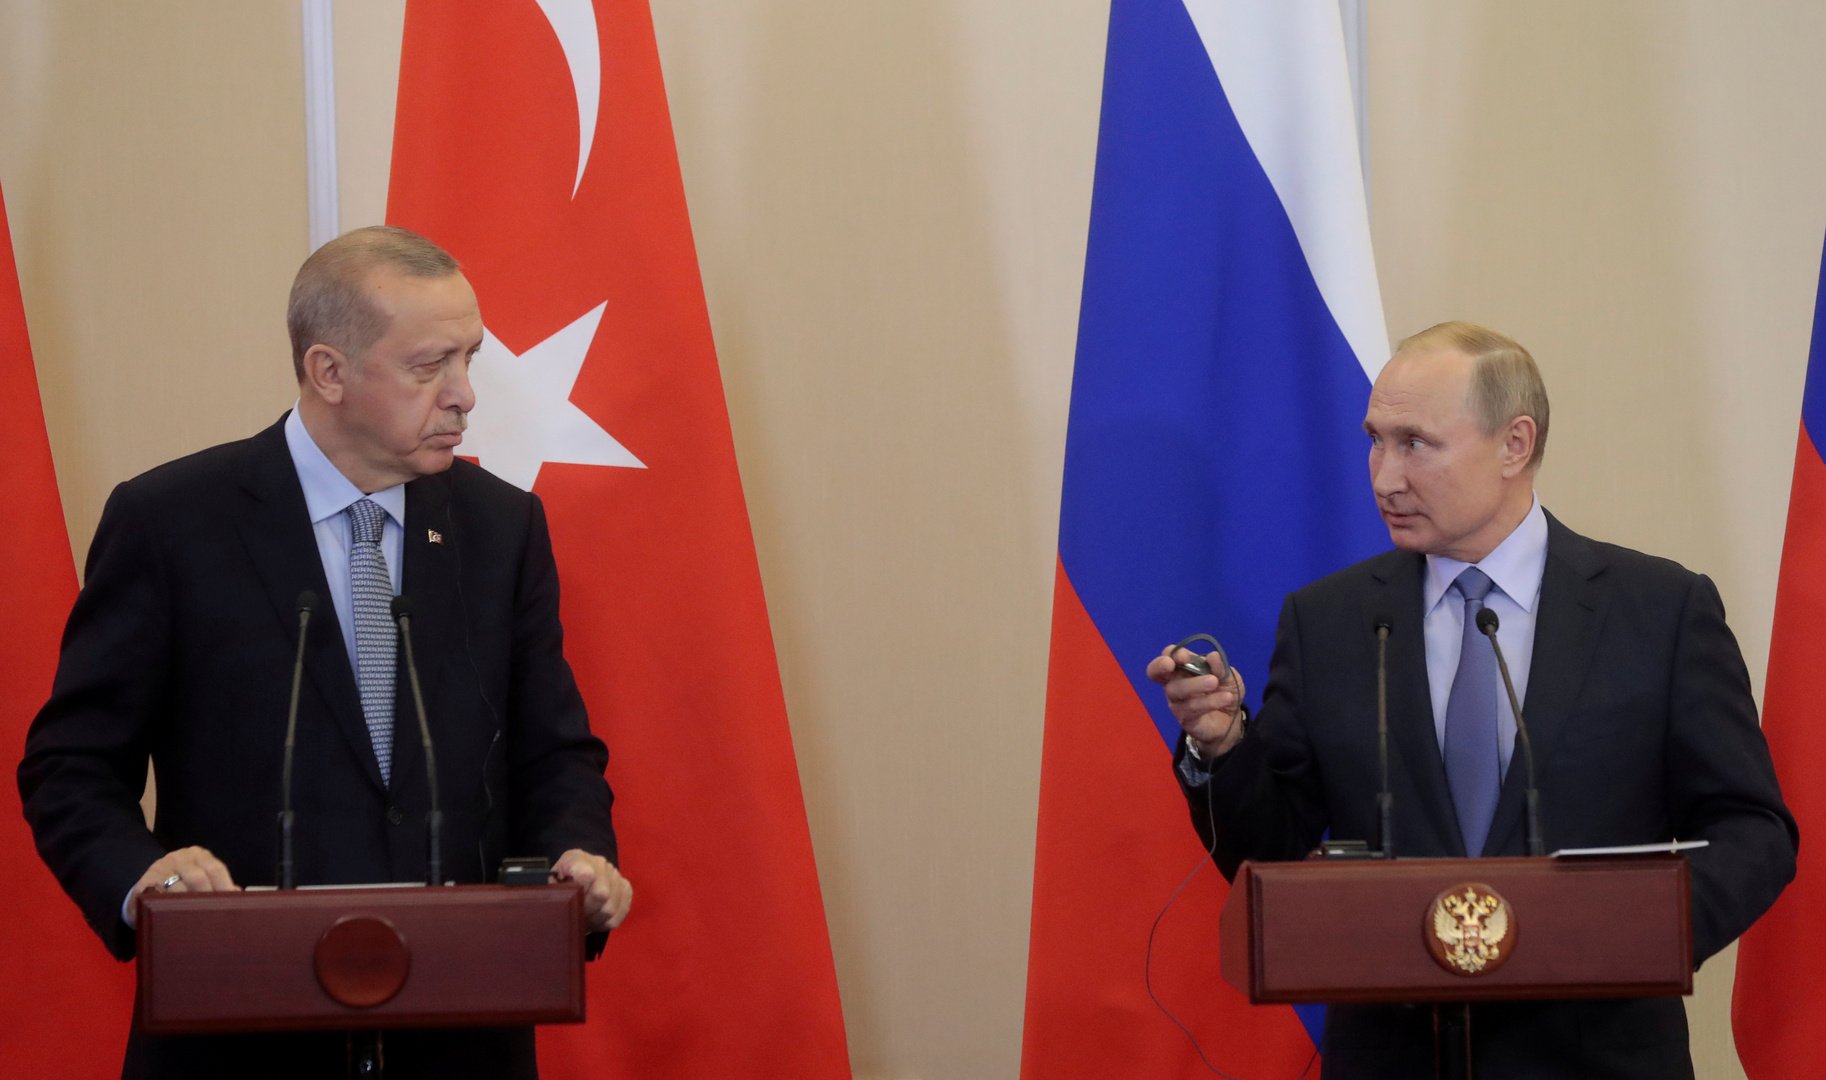 يحاولون زرع الشقاق بين تركيا وروسيا بأقذر الطرق